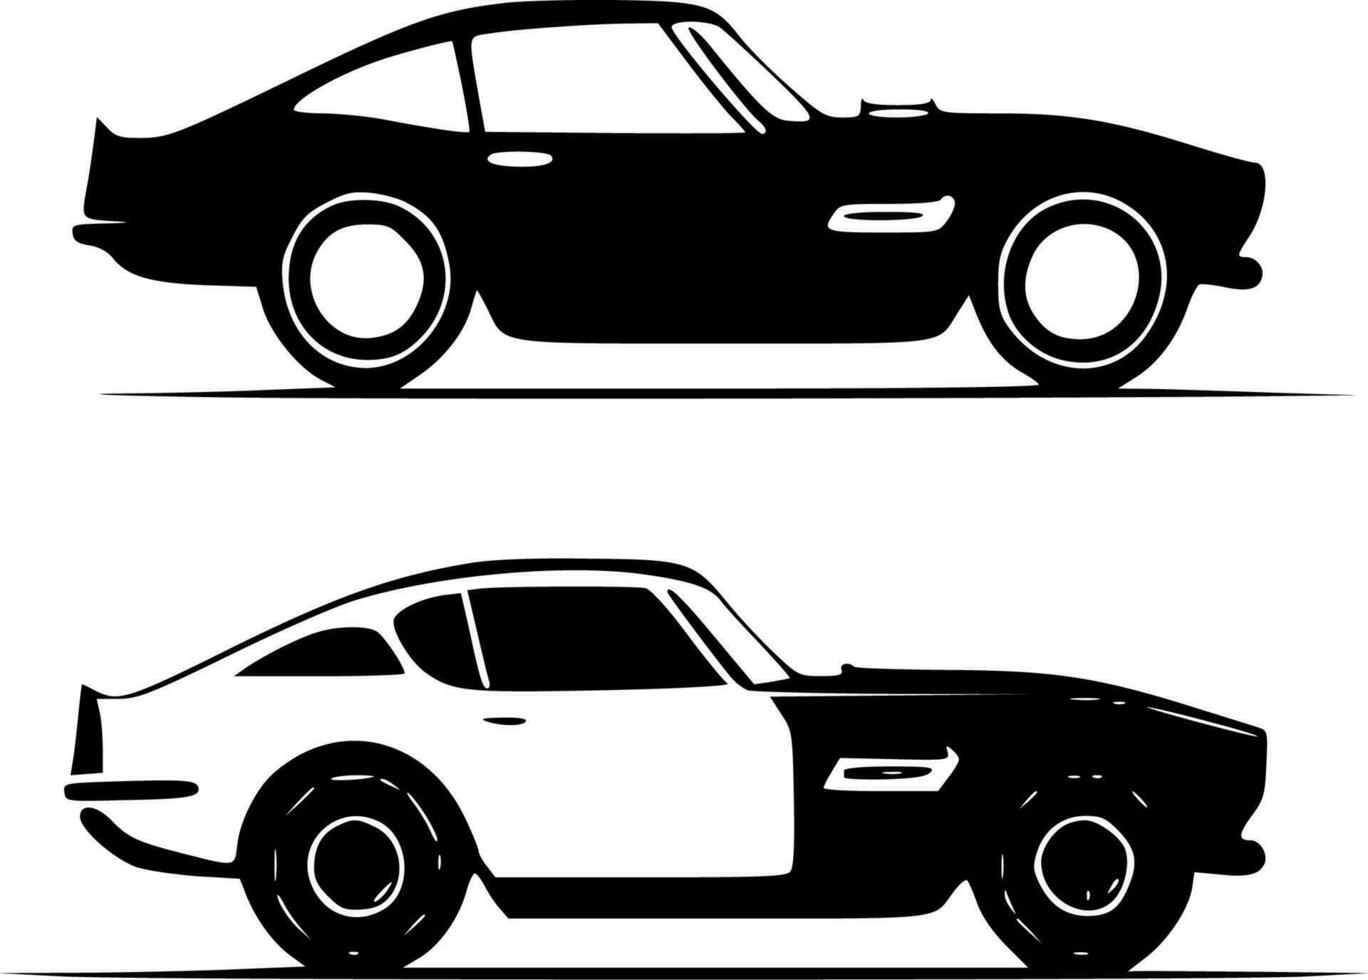 bilar - hög kvalitet vektor logotyp - vektor illustration idealisk för t-shirt grafisk